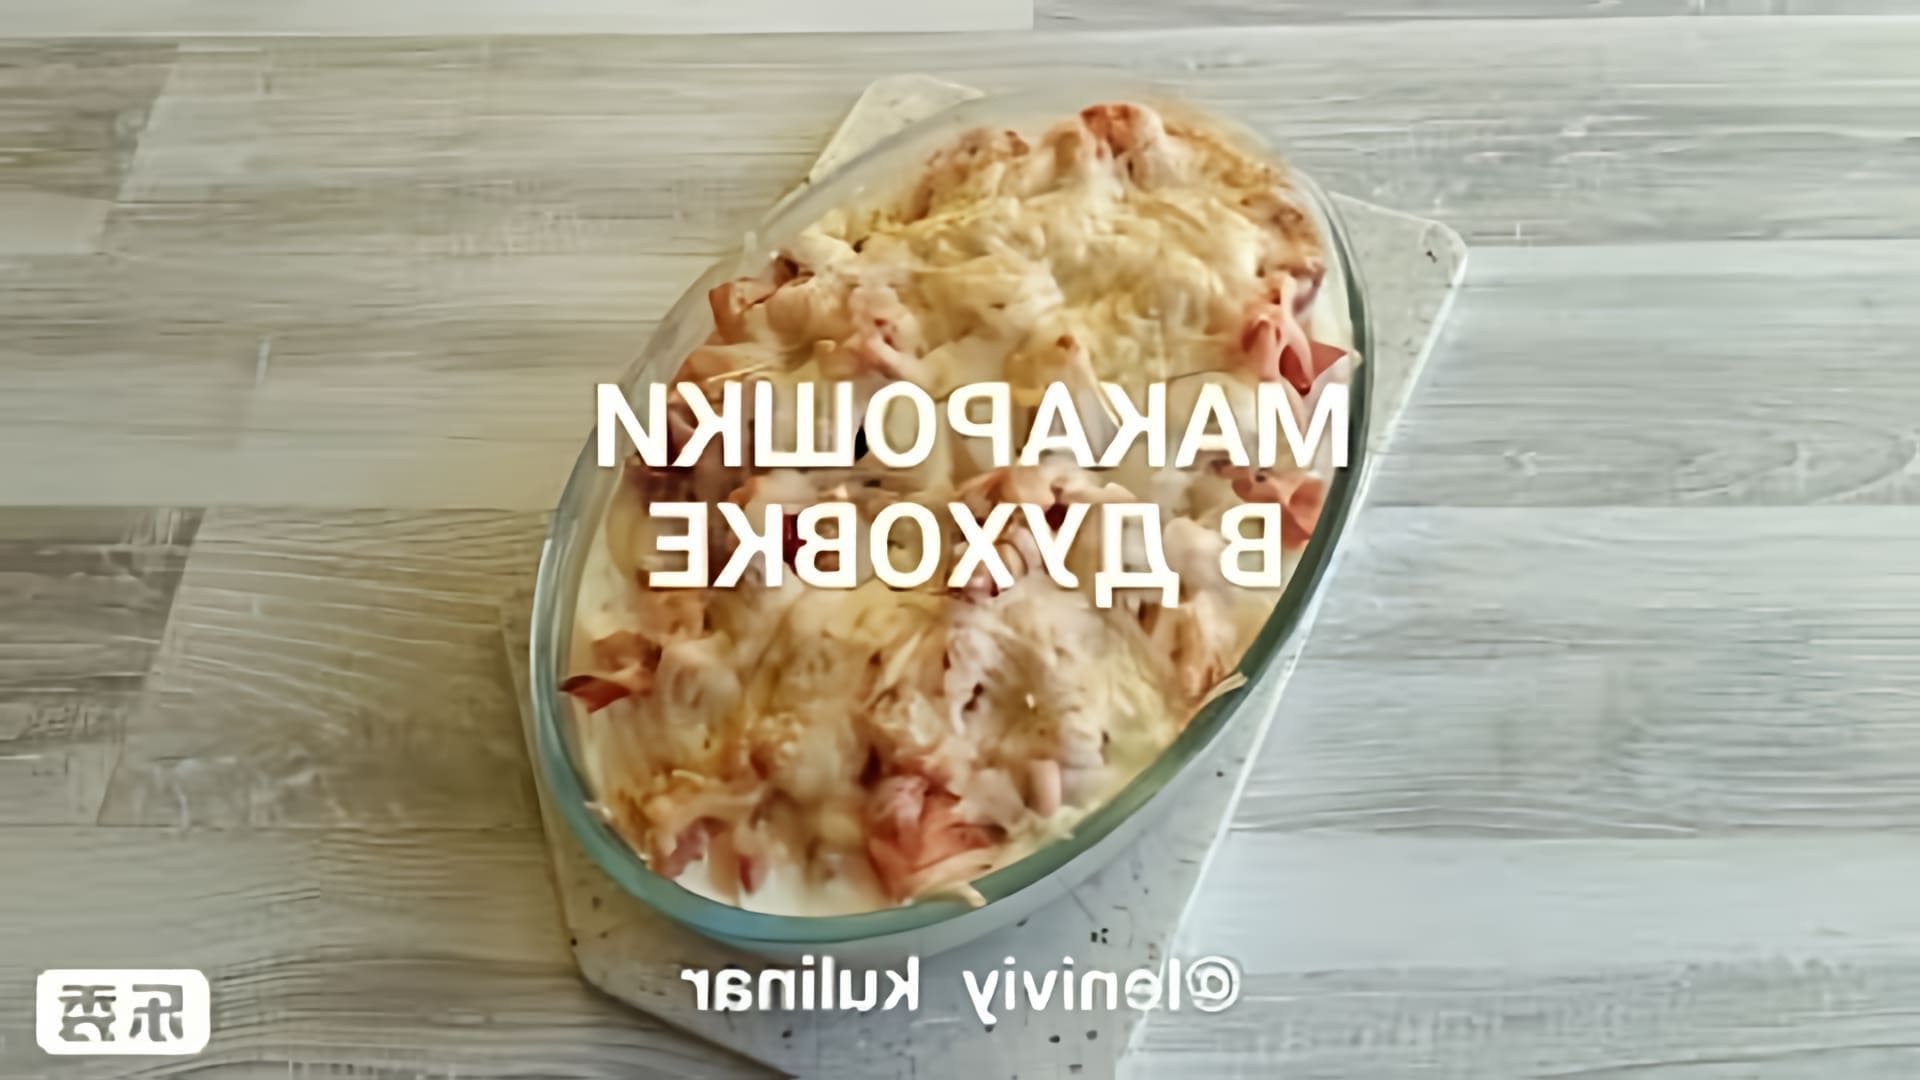 В этом видео-ролике рассказывается о простом и быстром способе приготовления макарон в духовке